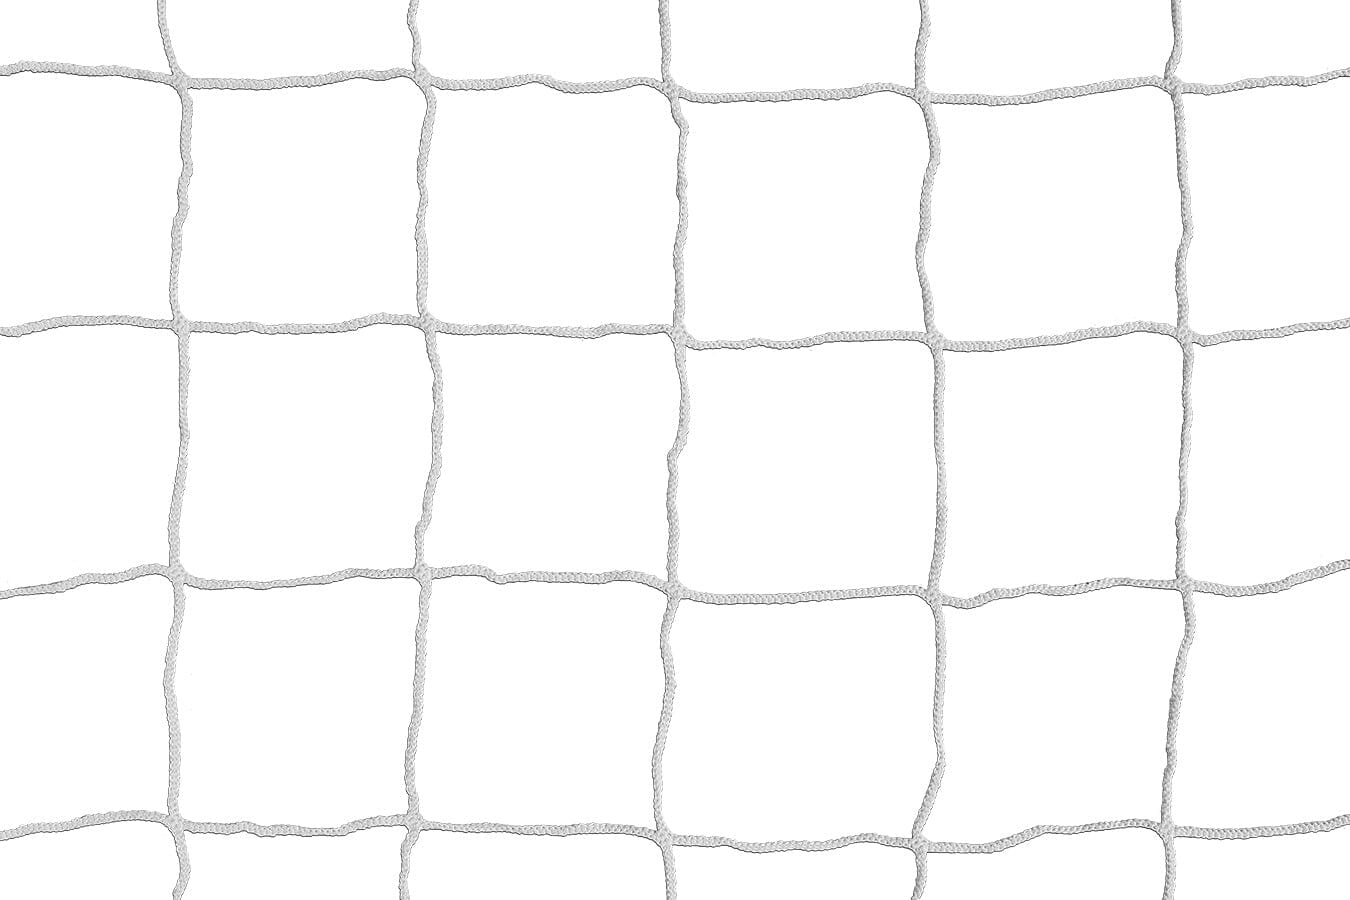 Kwikgoal Solid Braid Knotless Net | 3B5501 Nets Kwikgoal White 